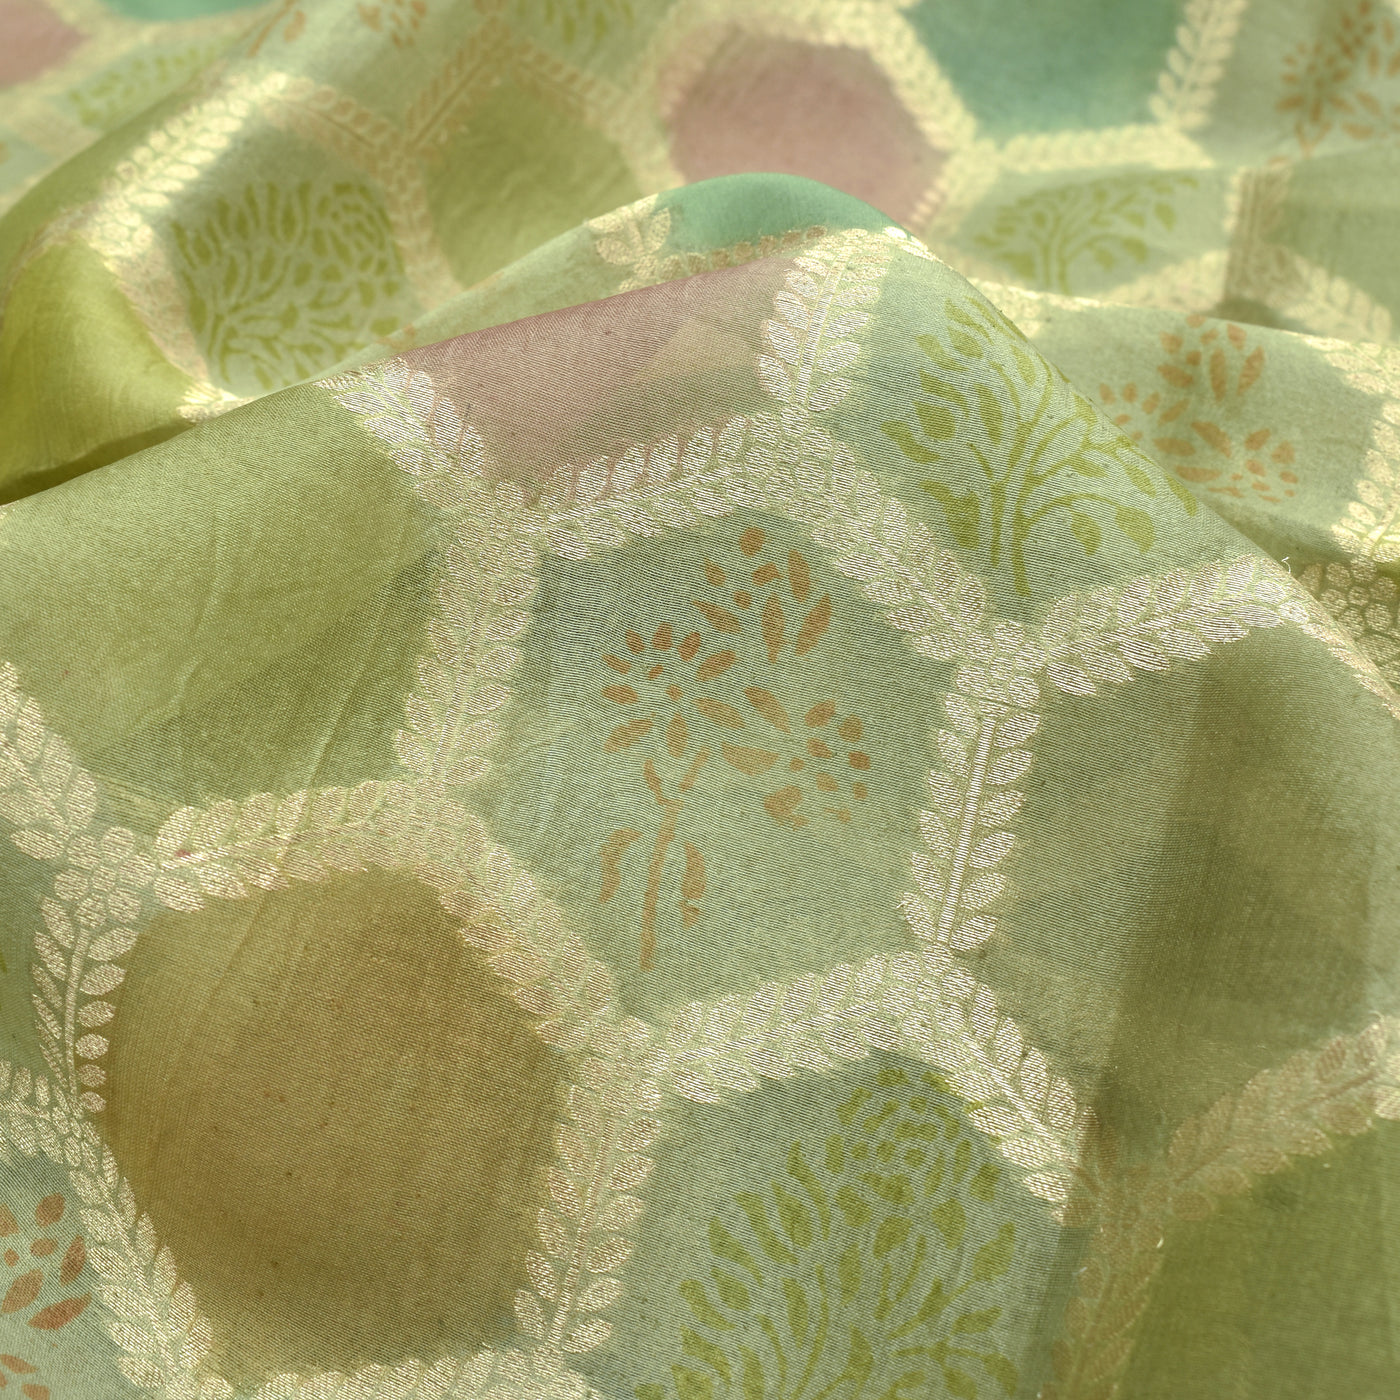 Elaichi Green Organza Fabric with Diamond Leaf Design